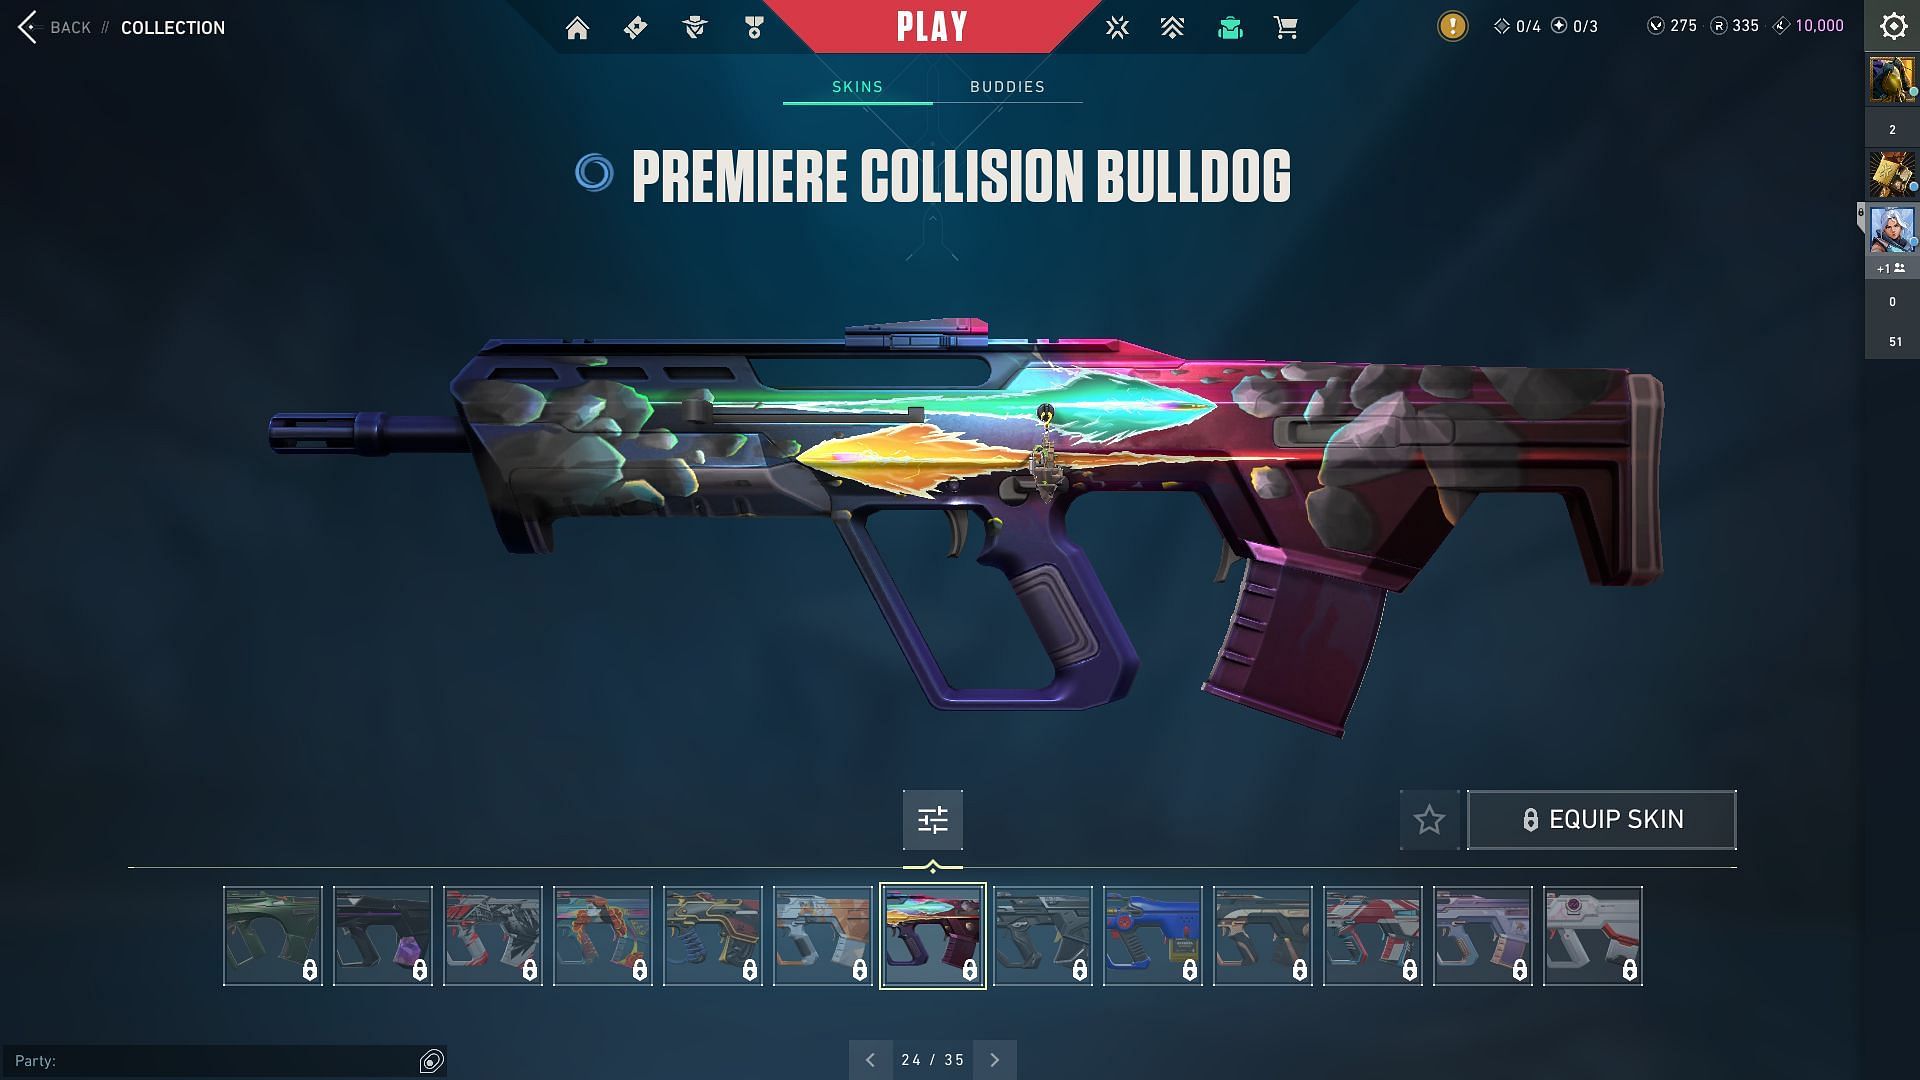 Premiere Collsion Bulldog (Image via Sportskeeda and Riot Games)